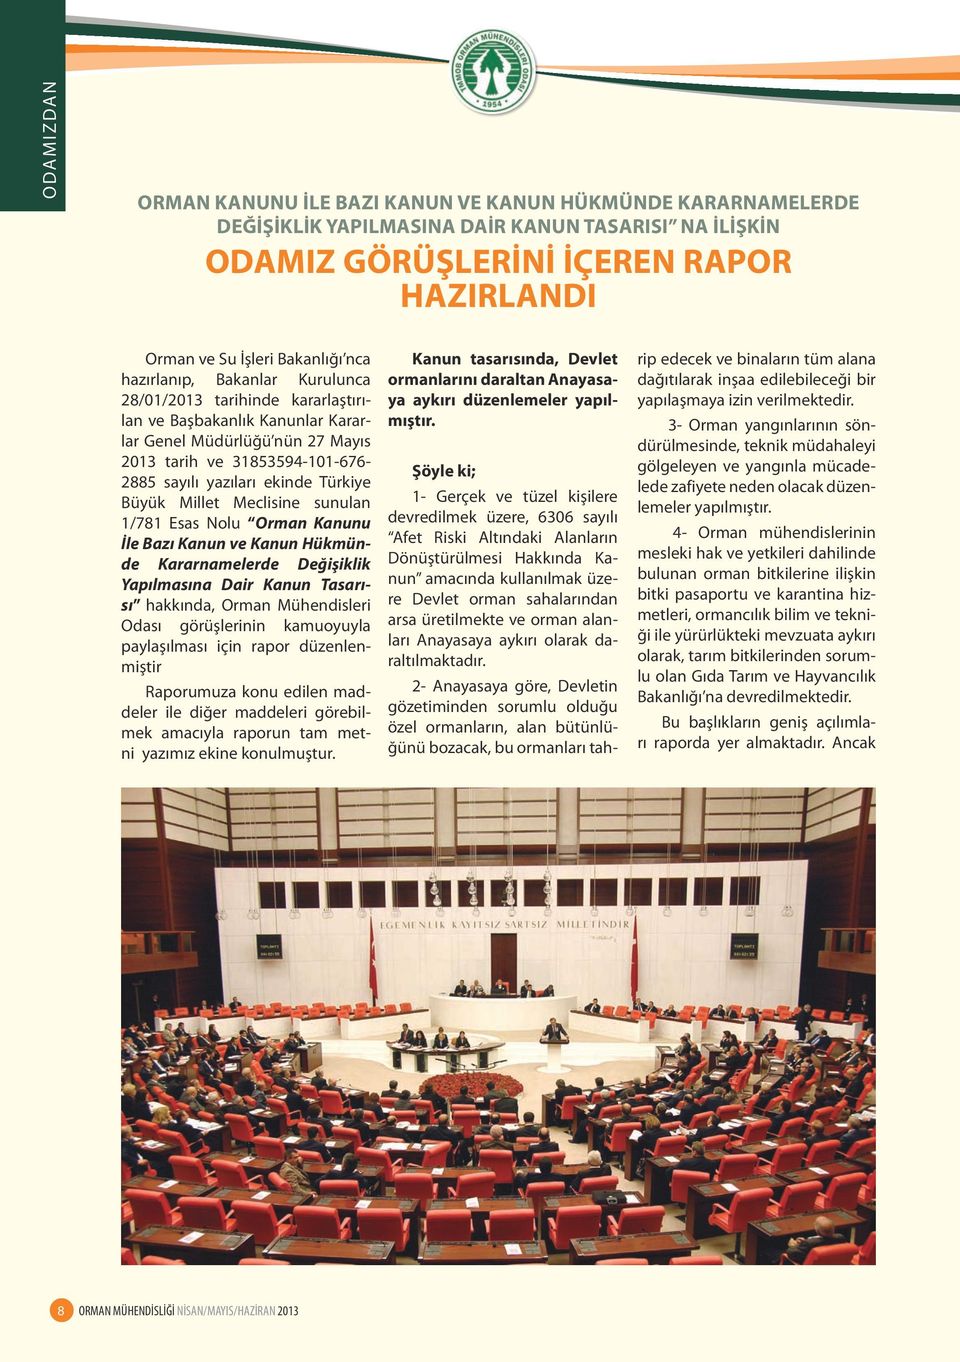 Türkiye Büyük Millet Meclisine sunulan 1/781 Esas Nolu Orman Kanunu İle Bazı Kanun ve Kanun Hükmünde Kararnamelerde Değişiklik Yapılmasına Dair Kanun Tasarısı hakkında, Orman Mühendisleri Odası